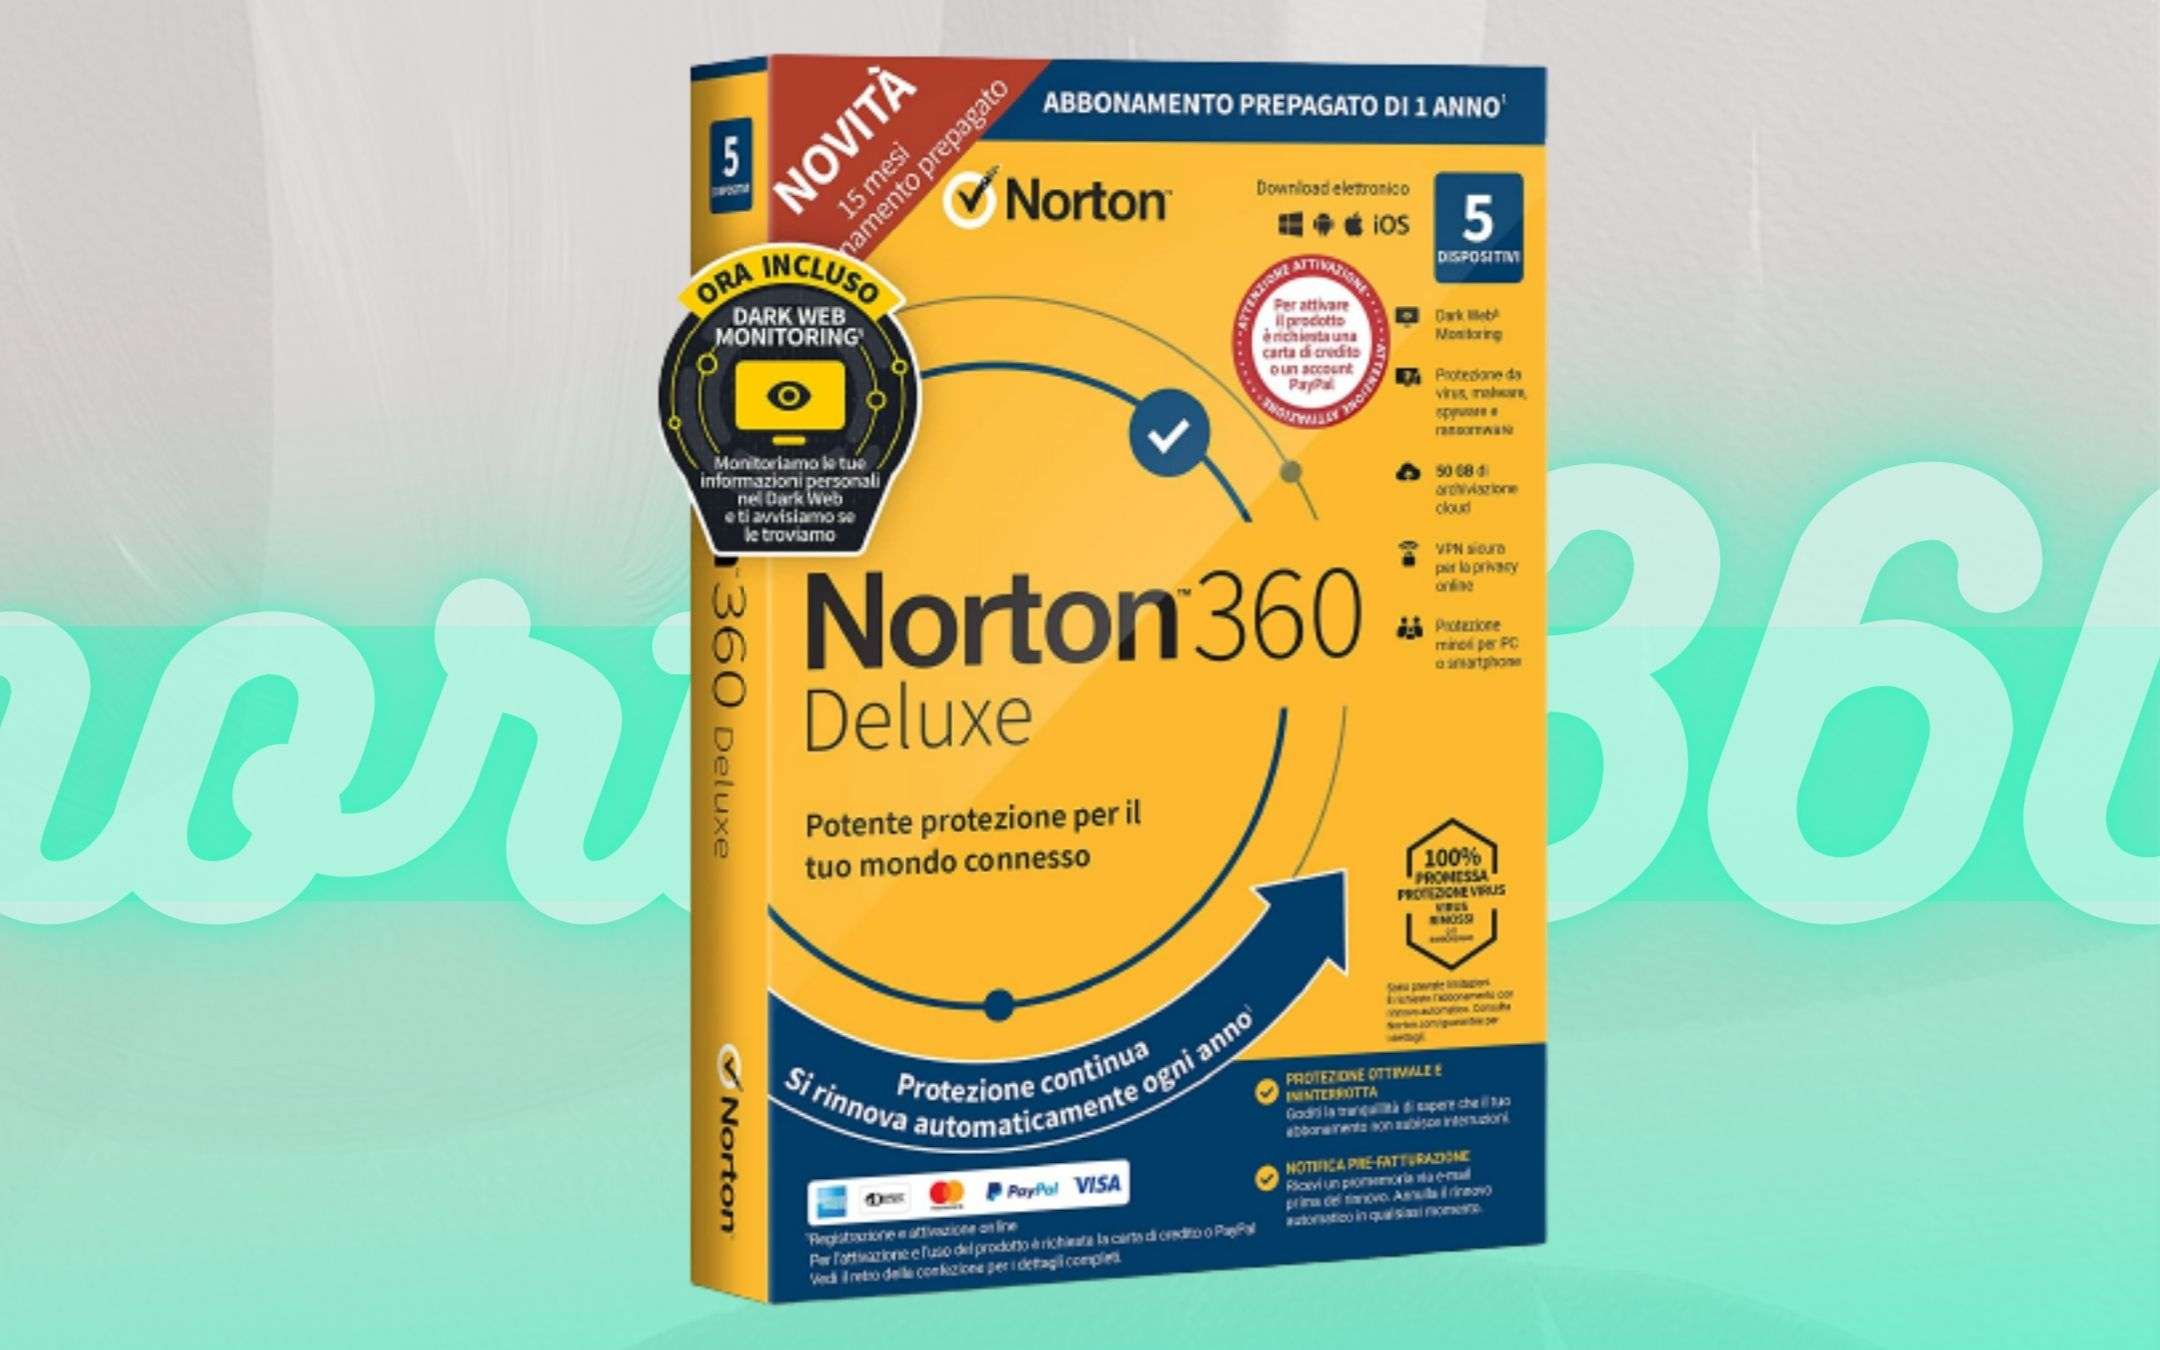 Norton 360 Deluxe: proteggi cinque dispositivi a meno di 5€